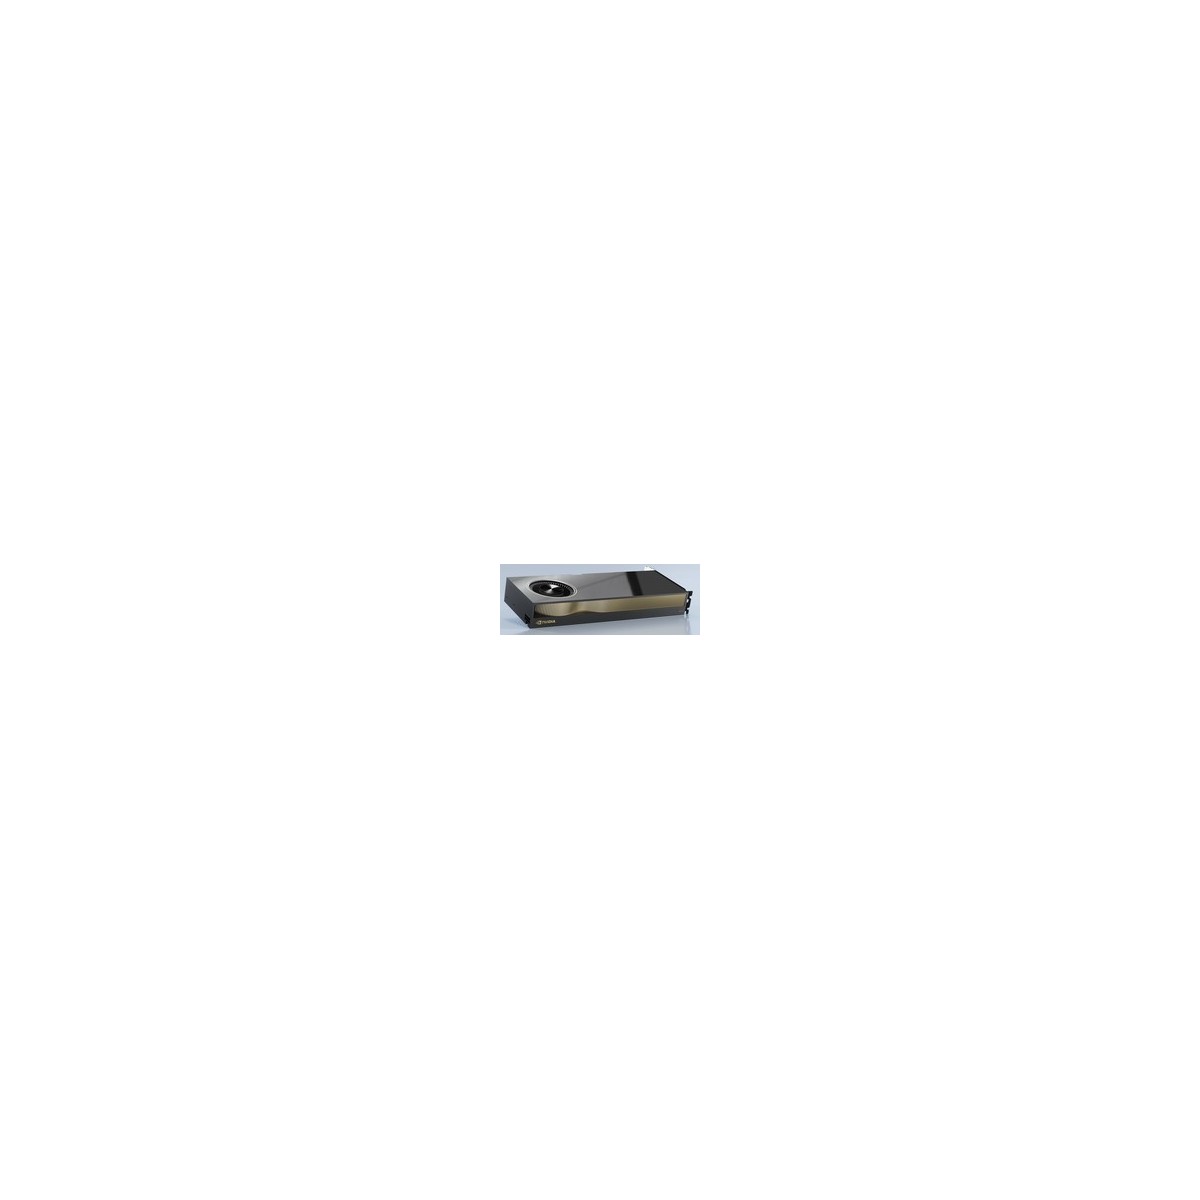 NVIDIA RTX A4500 - RTX A4500 - 20 GB - GDDR6 - 320 bit - 7680 x 4320 pixels - PCI Express x16 4.0